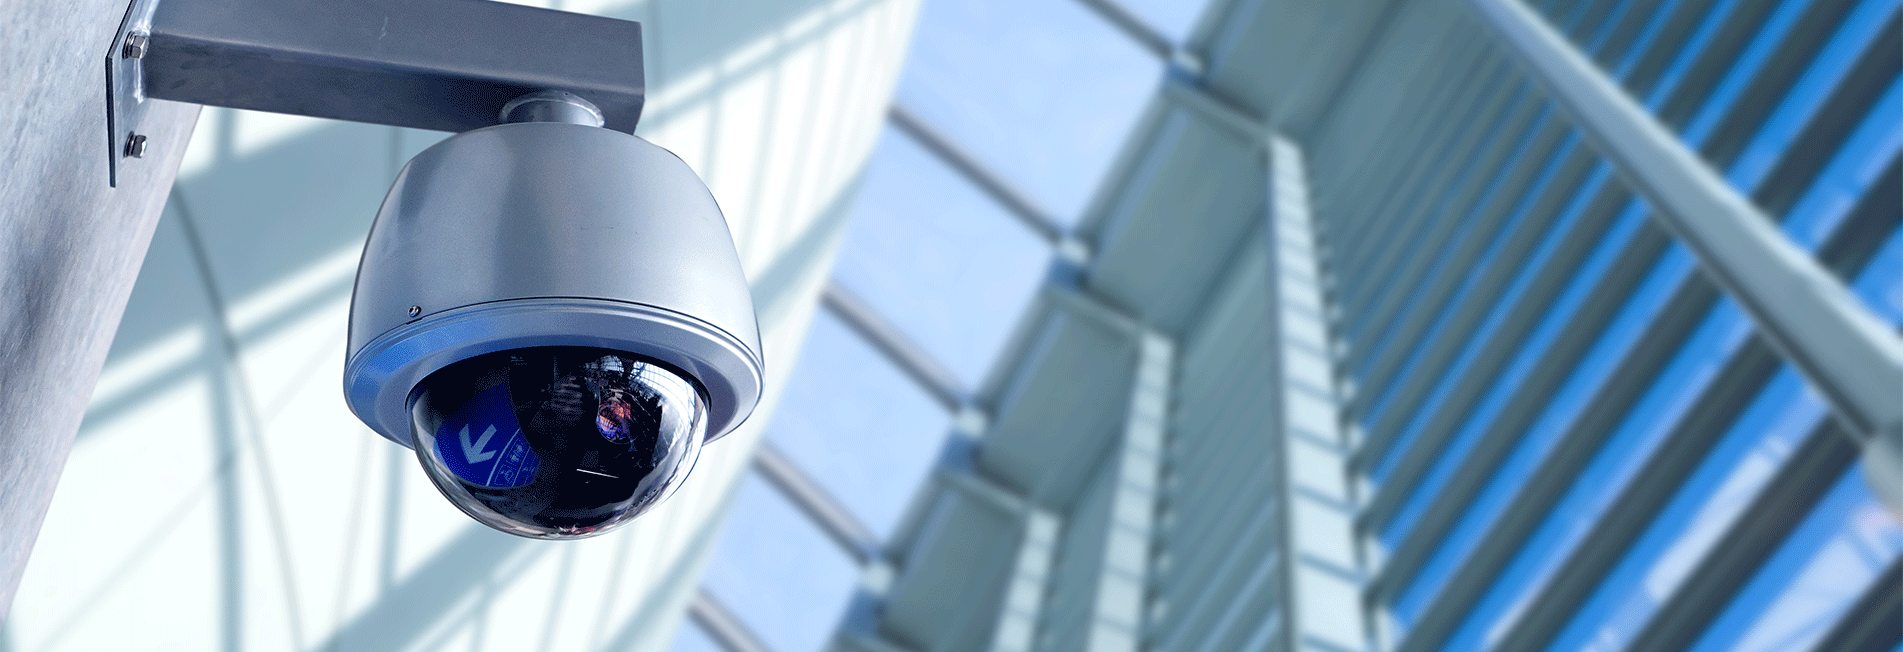 Comment choisir une caméra de surveillance adaptée à vos besoins ?